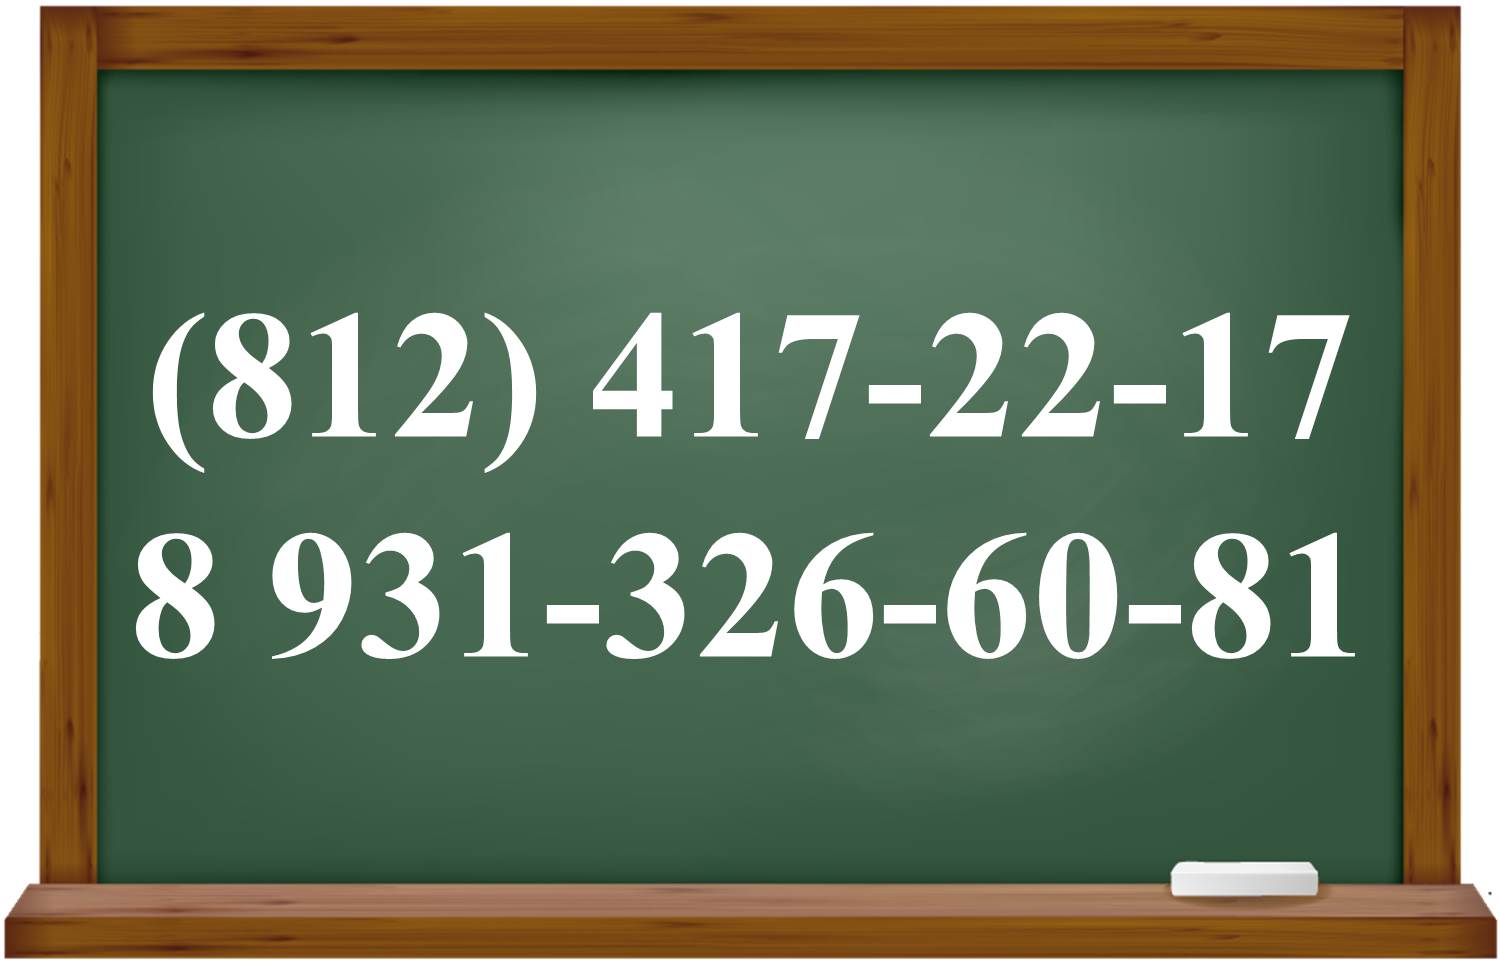 Контактные телефоны для получения официальной информации о графике работы школы